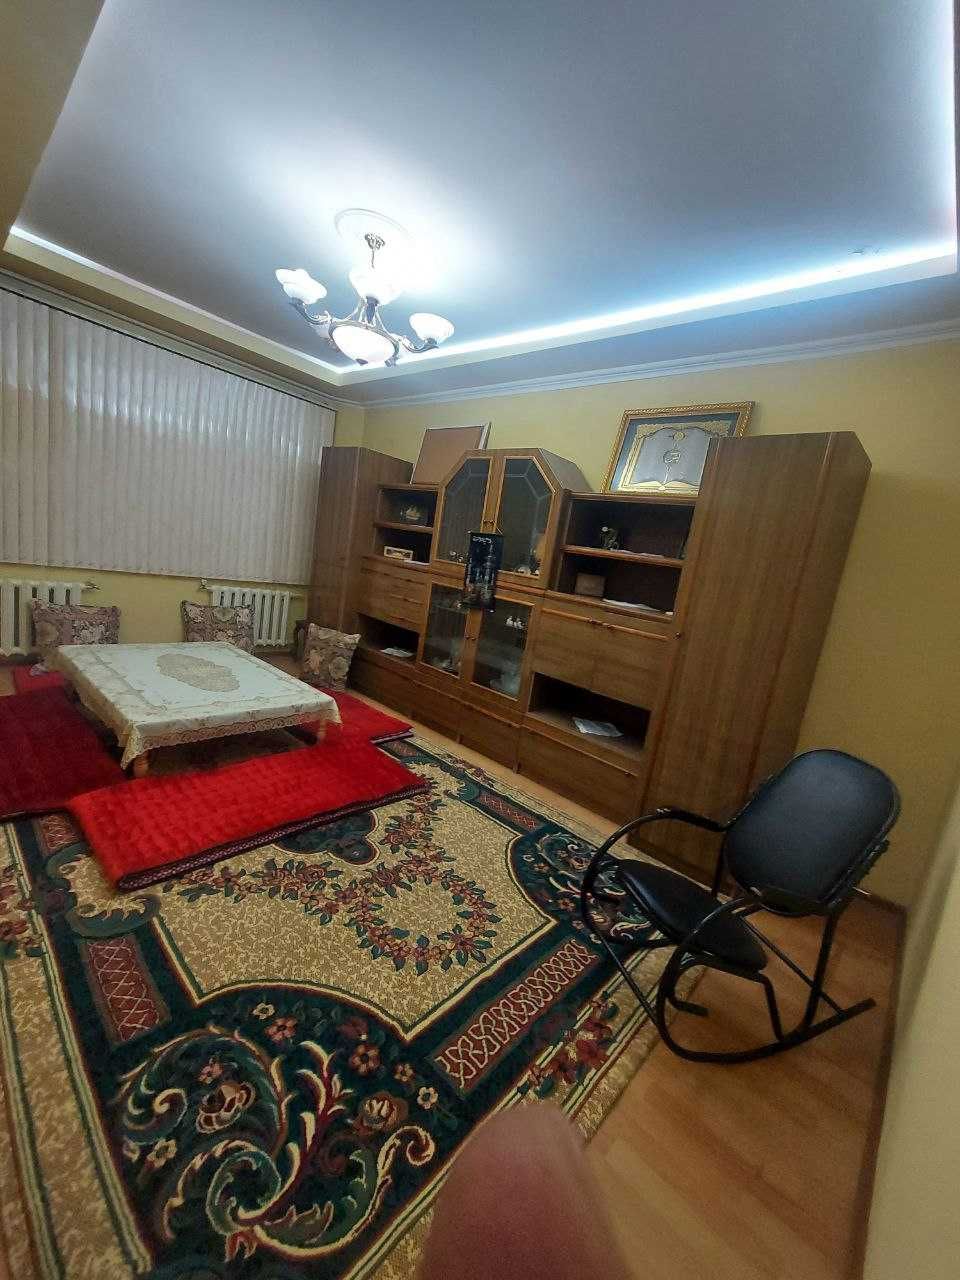 Sebzor: 3-комнатная квартира в аренду с отдельной гостиной и кухней.